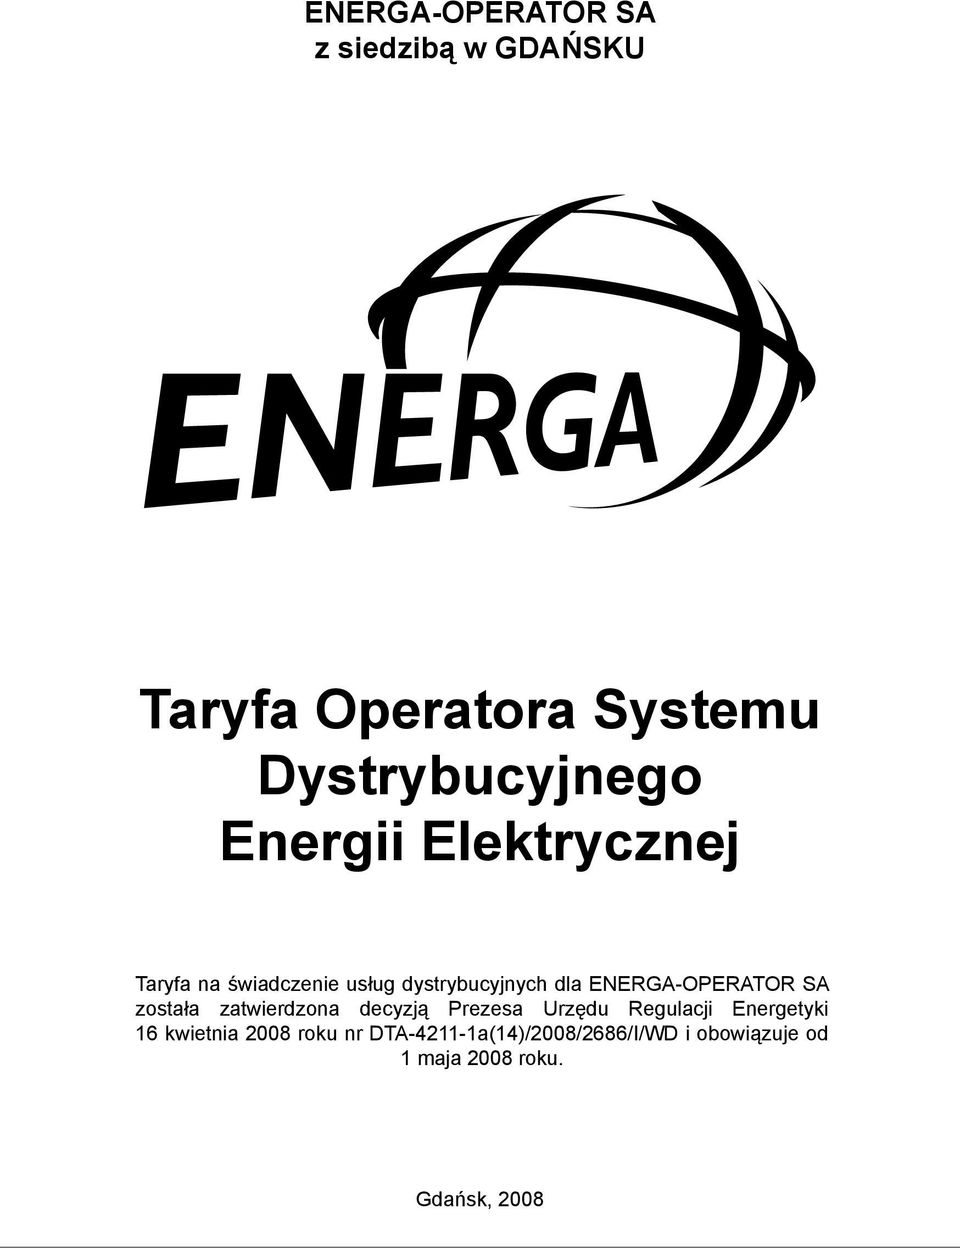 zatwierdzona decyzją Prezesa Urzędu Regulacji Energetyki 16 kwietnia 2008